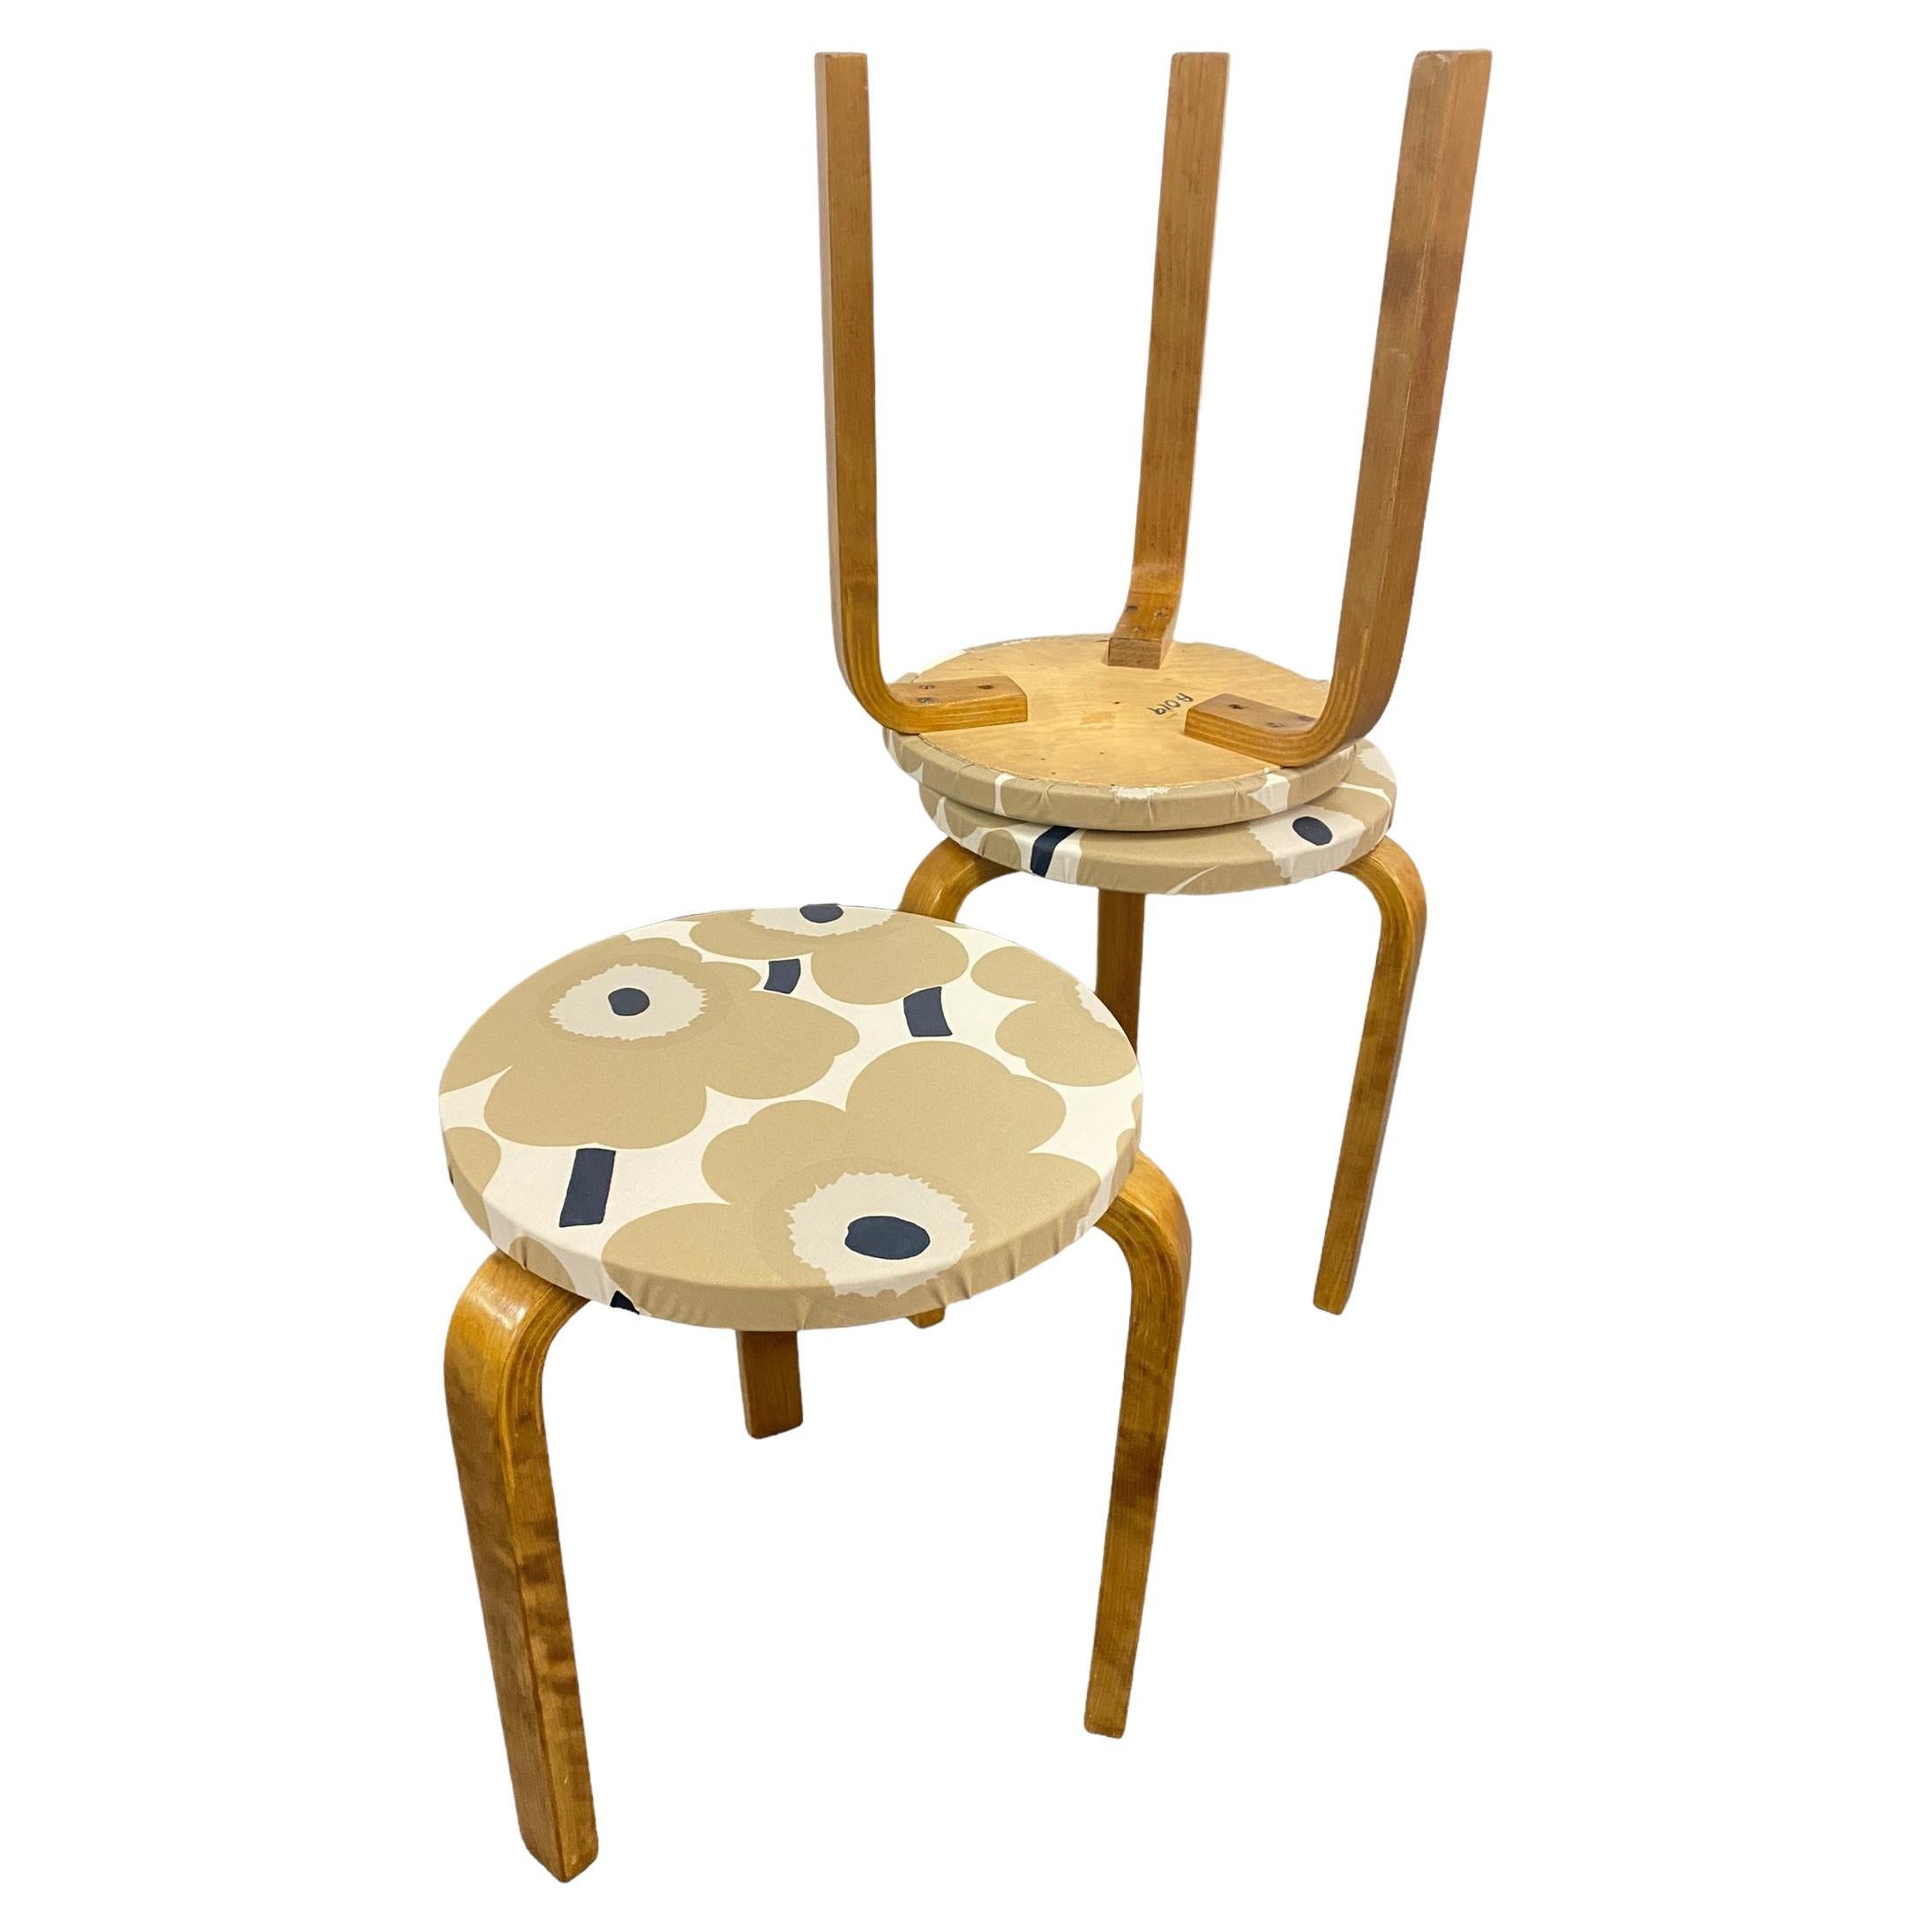 Diese drei ikonischen Hocker von Alvar Aalto aus den 1930er Jahren sind schöne und platzsparende Möbelstücke von zeitlosem Design. Die Beine werden ohne komplizierte Verbindungselemente direkt an der Unterseite des Rundsitzes montiert. Die Hocker